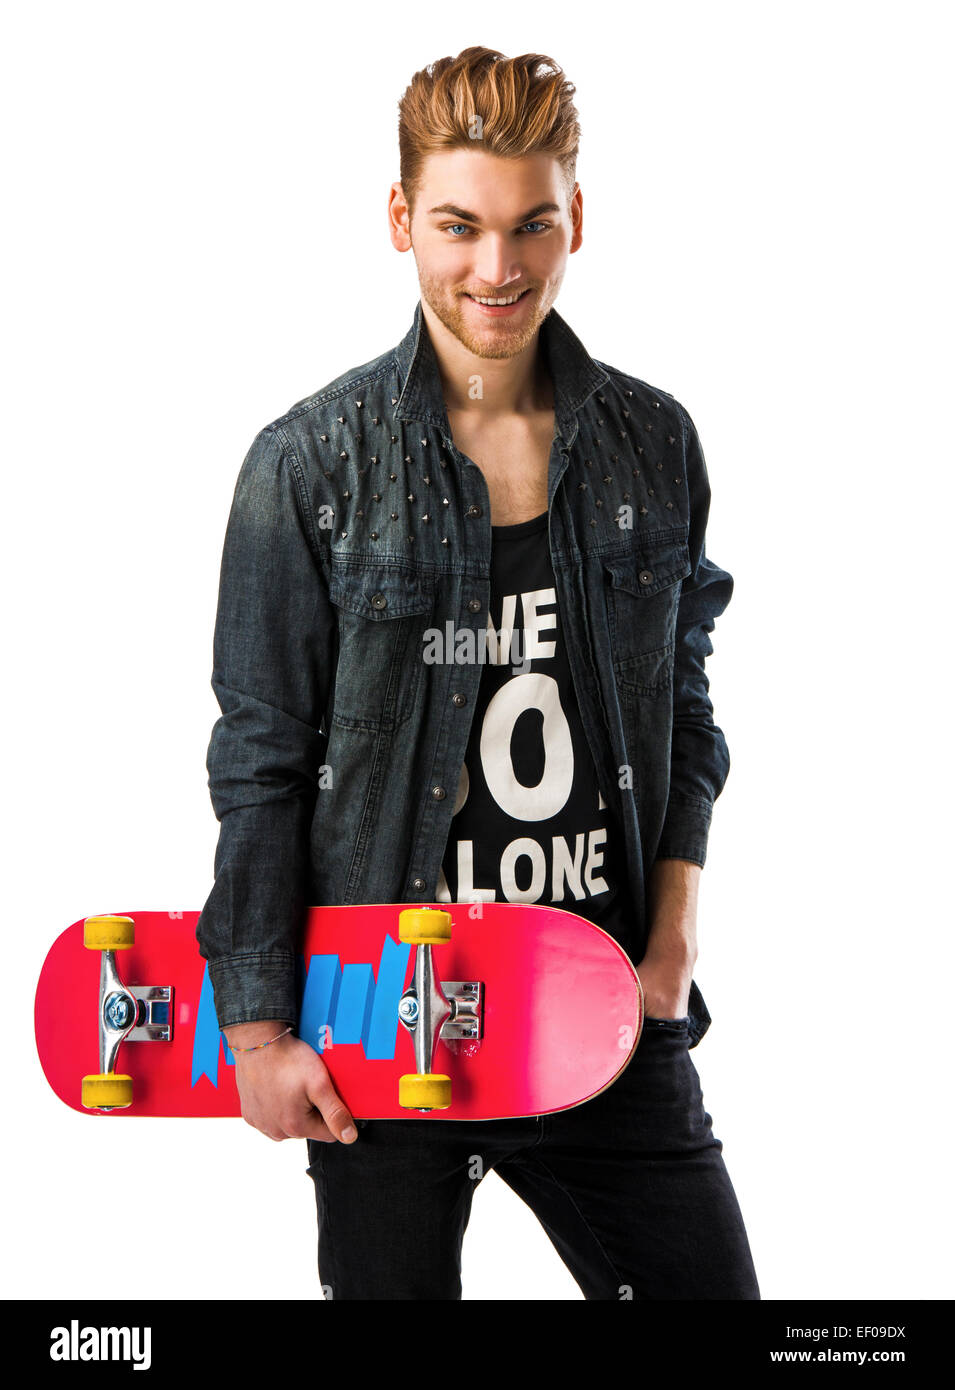 Ritratto in studio di un giovane uomo che posano con uno skateboard Foto Stock